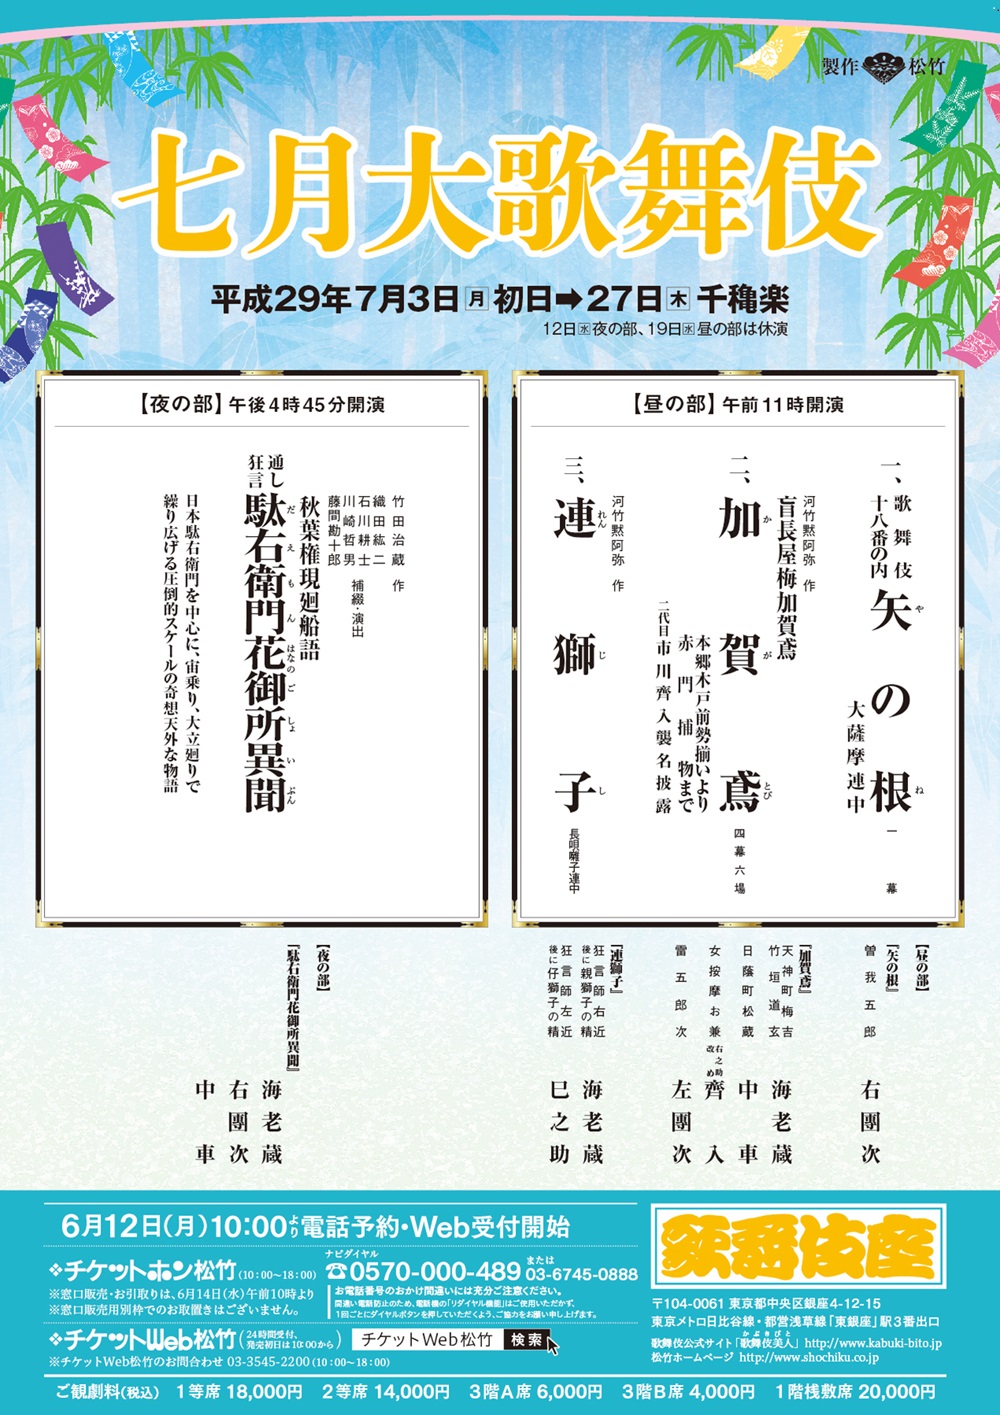 良席! 七月大歌舞伎 7/12 昼の部 中車 團子 - 伝統芸能